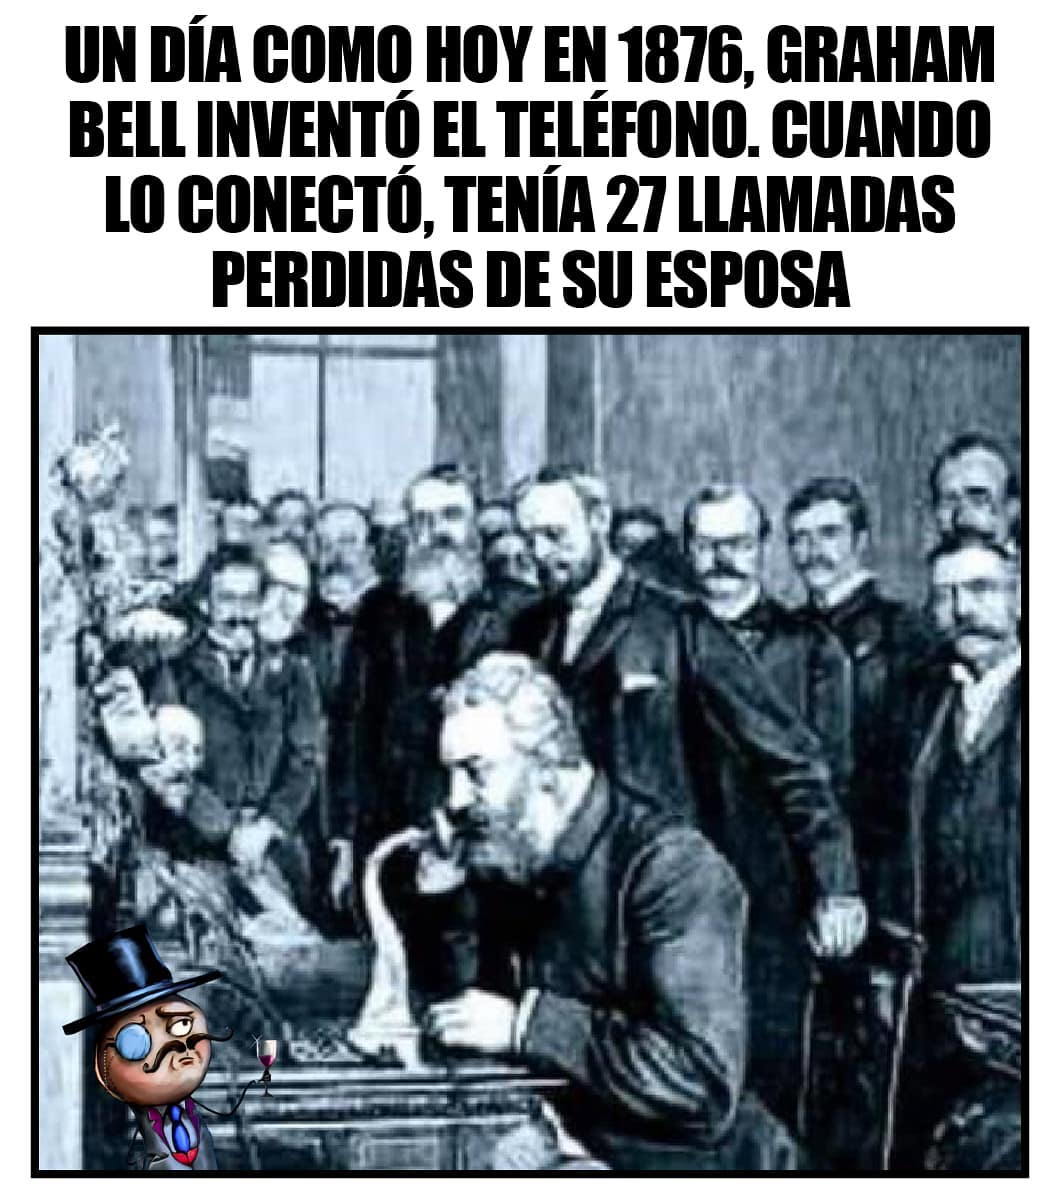 Un día como hoy en 1876, Graham Bell inventó el teléfono. Cuando lo conecto, tenia 27 llamadas perdidas de su esposa.